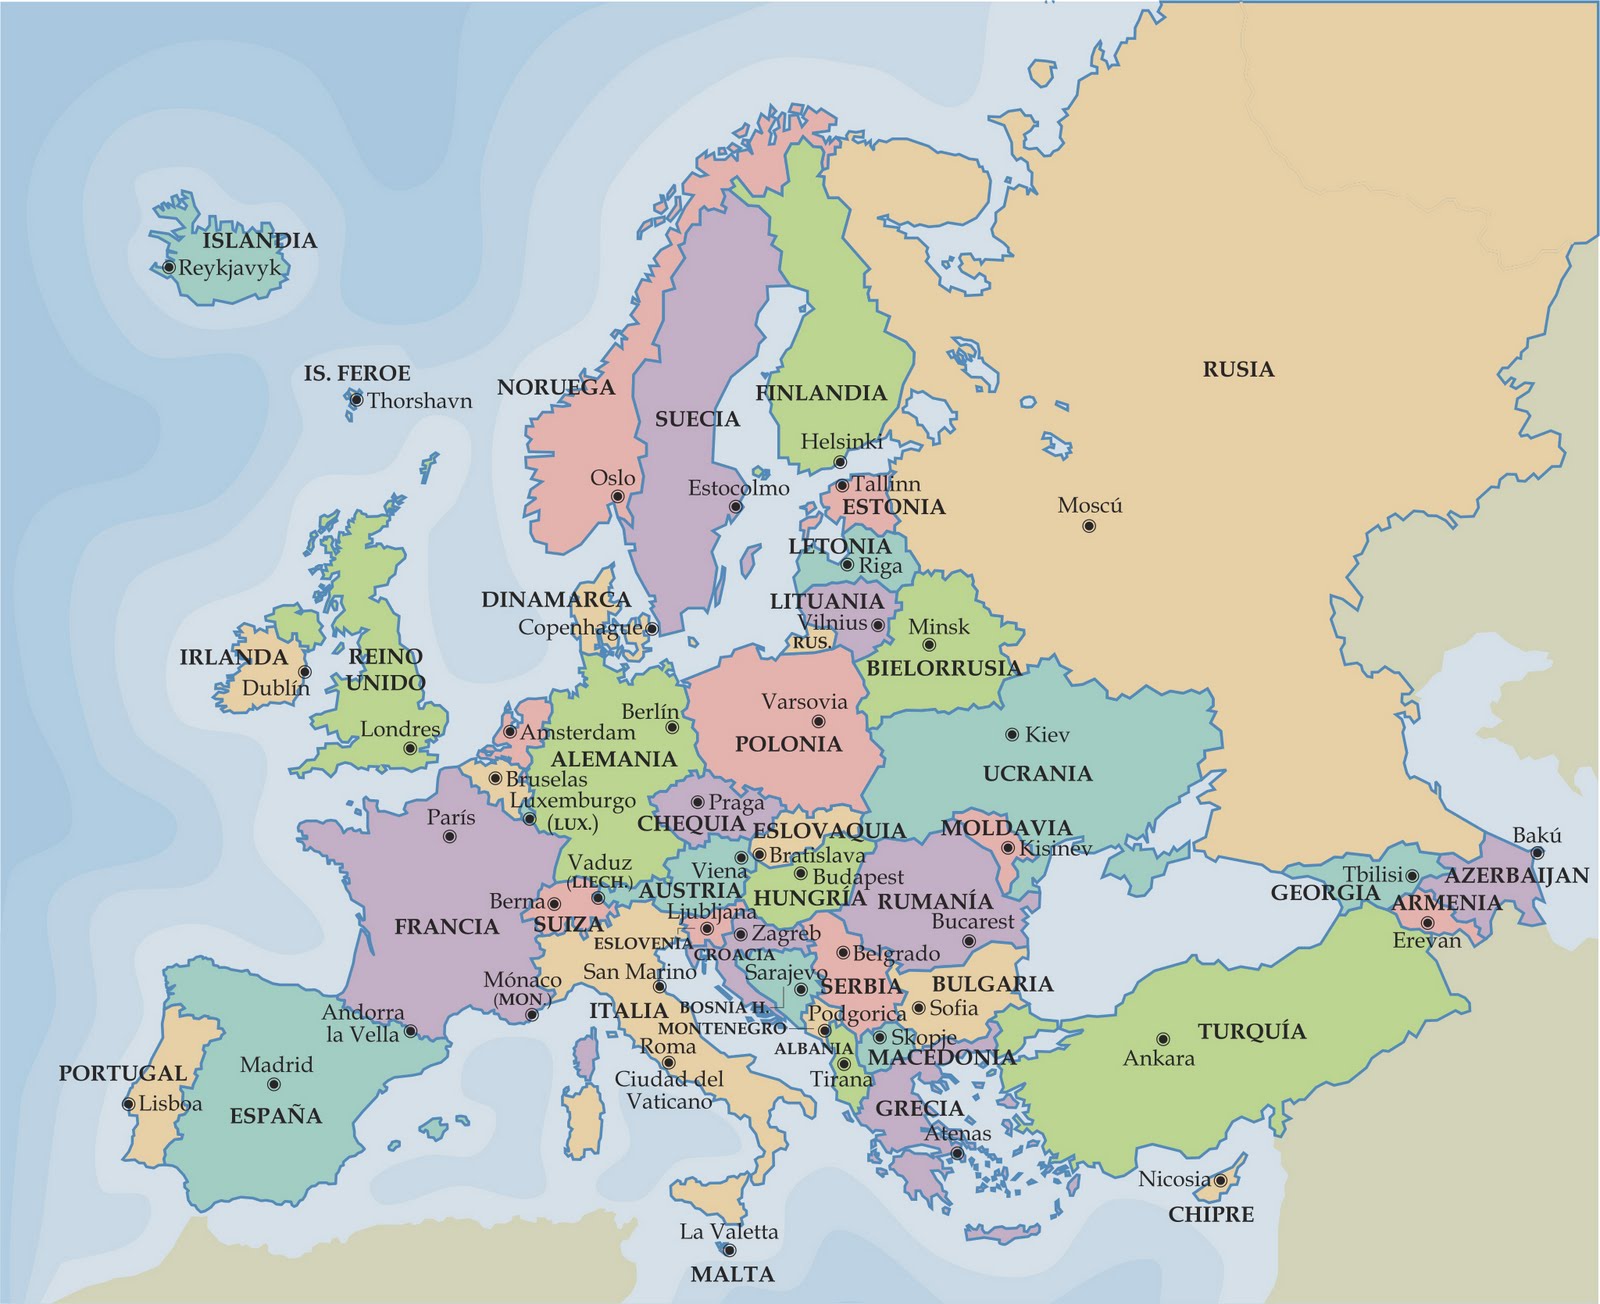 Díasyclase: ¿CUÁNTOS PAÍSES TIENE EUROPA? ¿Y LA UNIÓN EUROPEA? 2014